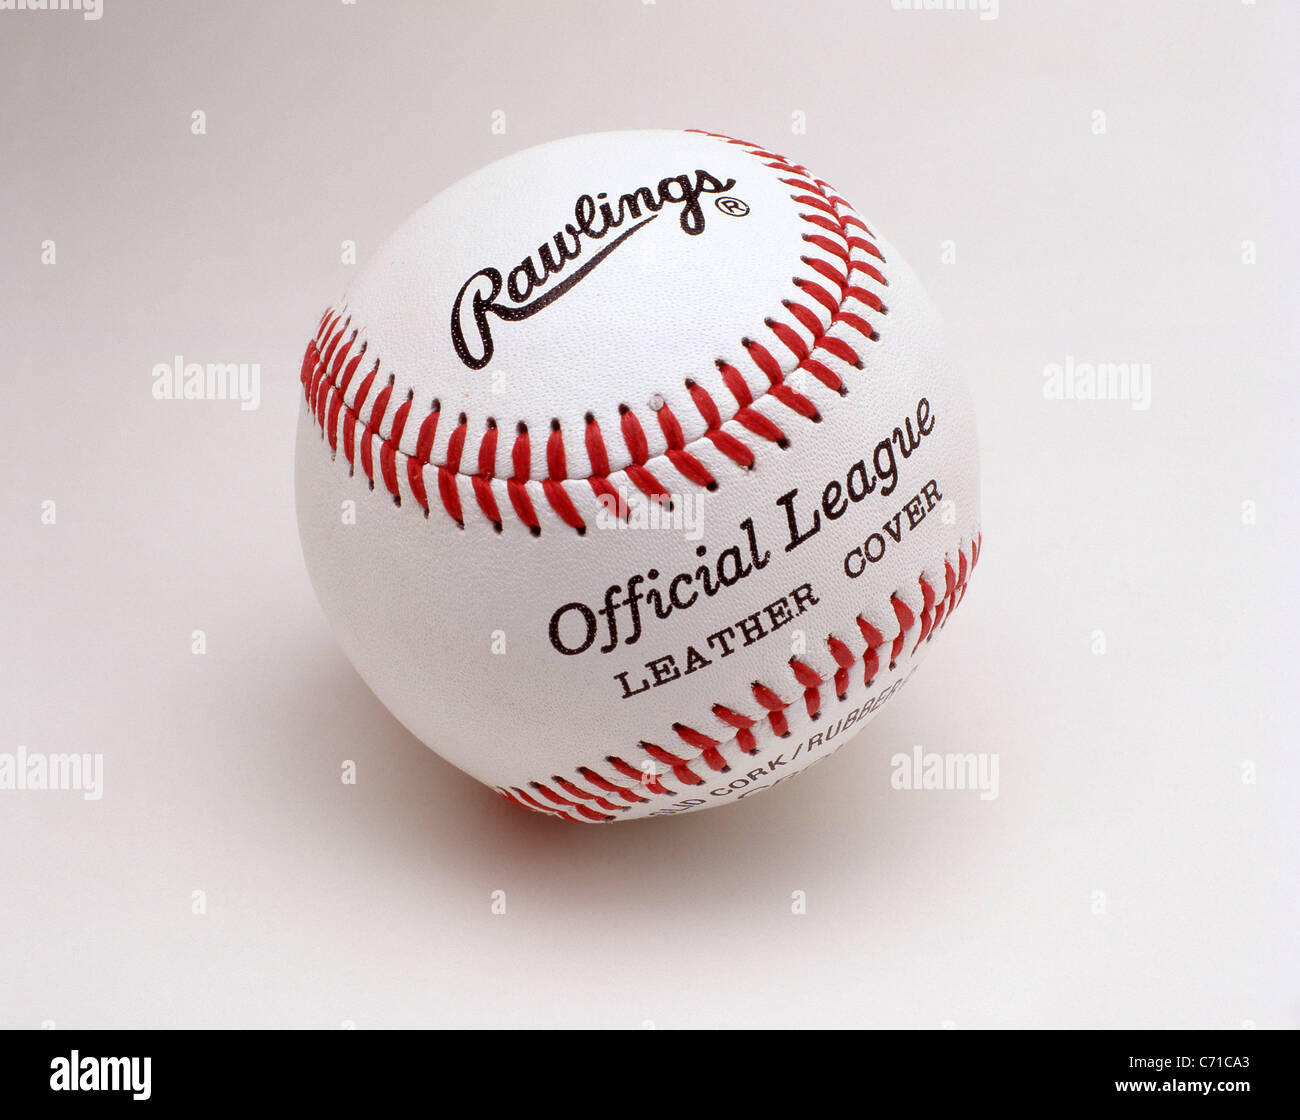 Ligue officiel, cuir, Rawlings baseball, États-Unis d'Amérique Banque D'Images